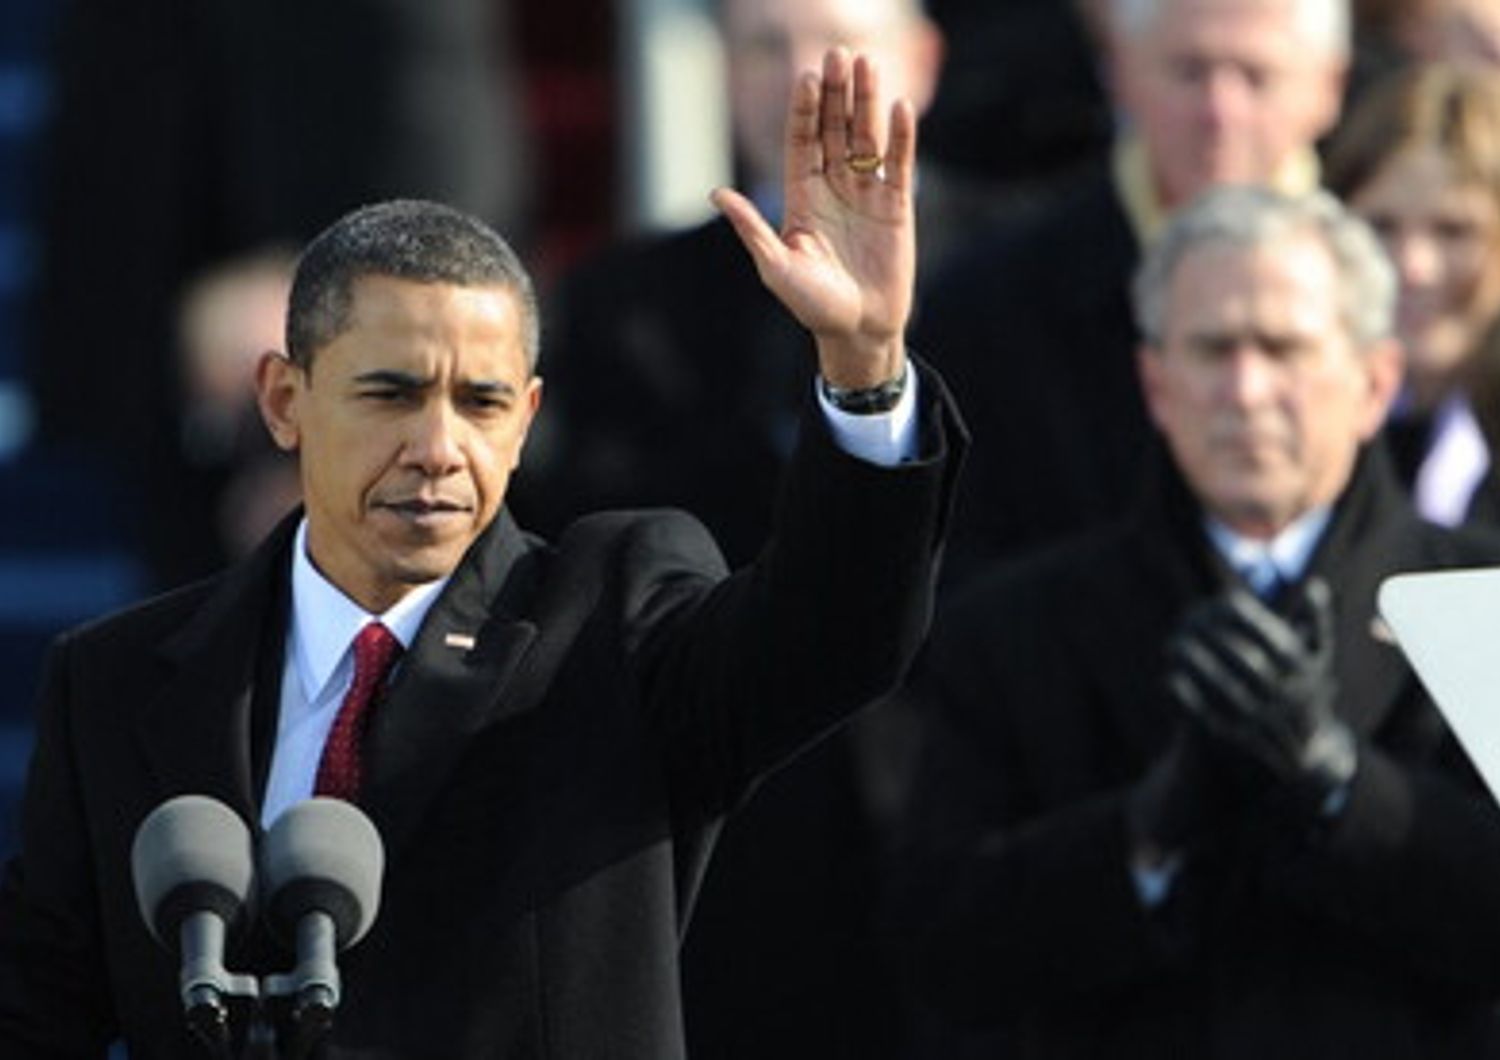 Il Presidente Usa Barack Obama dopo il discorso inaugurale del suo primo mandato presidenziale, 2009